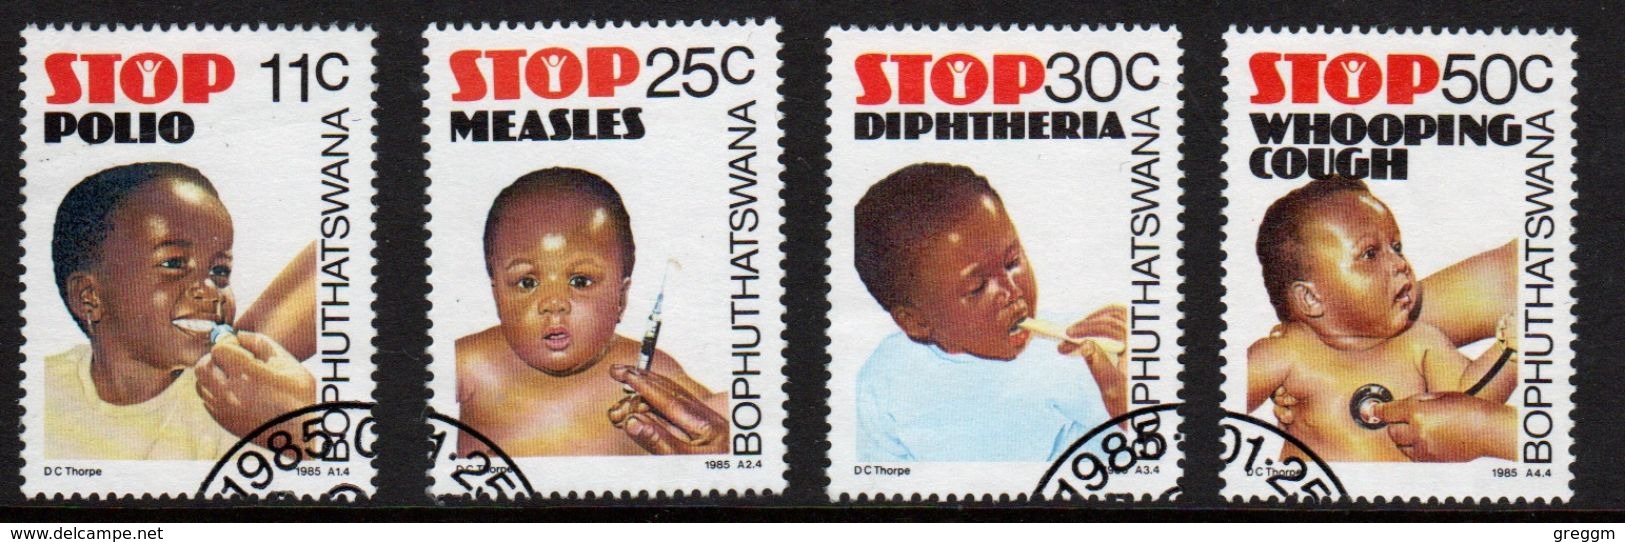 Bophuthatswana Set Of Stamps Celebrating Health From 1985. - Bophuthatswana